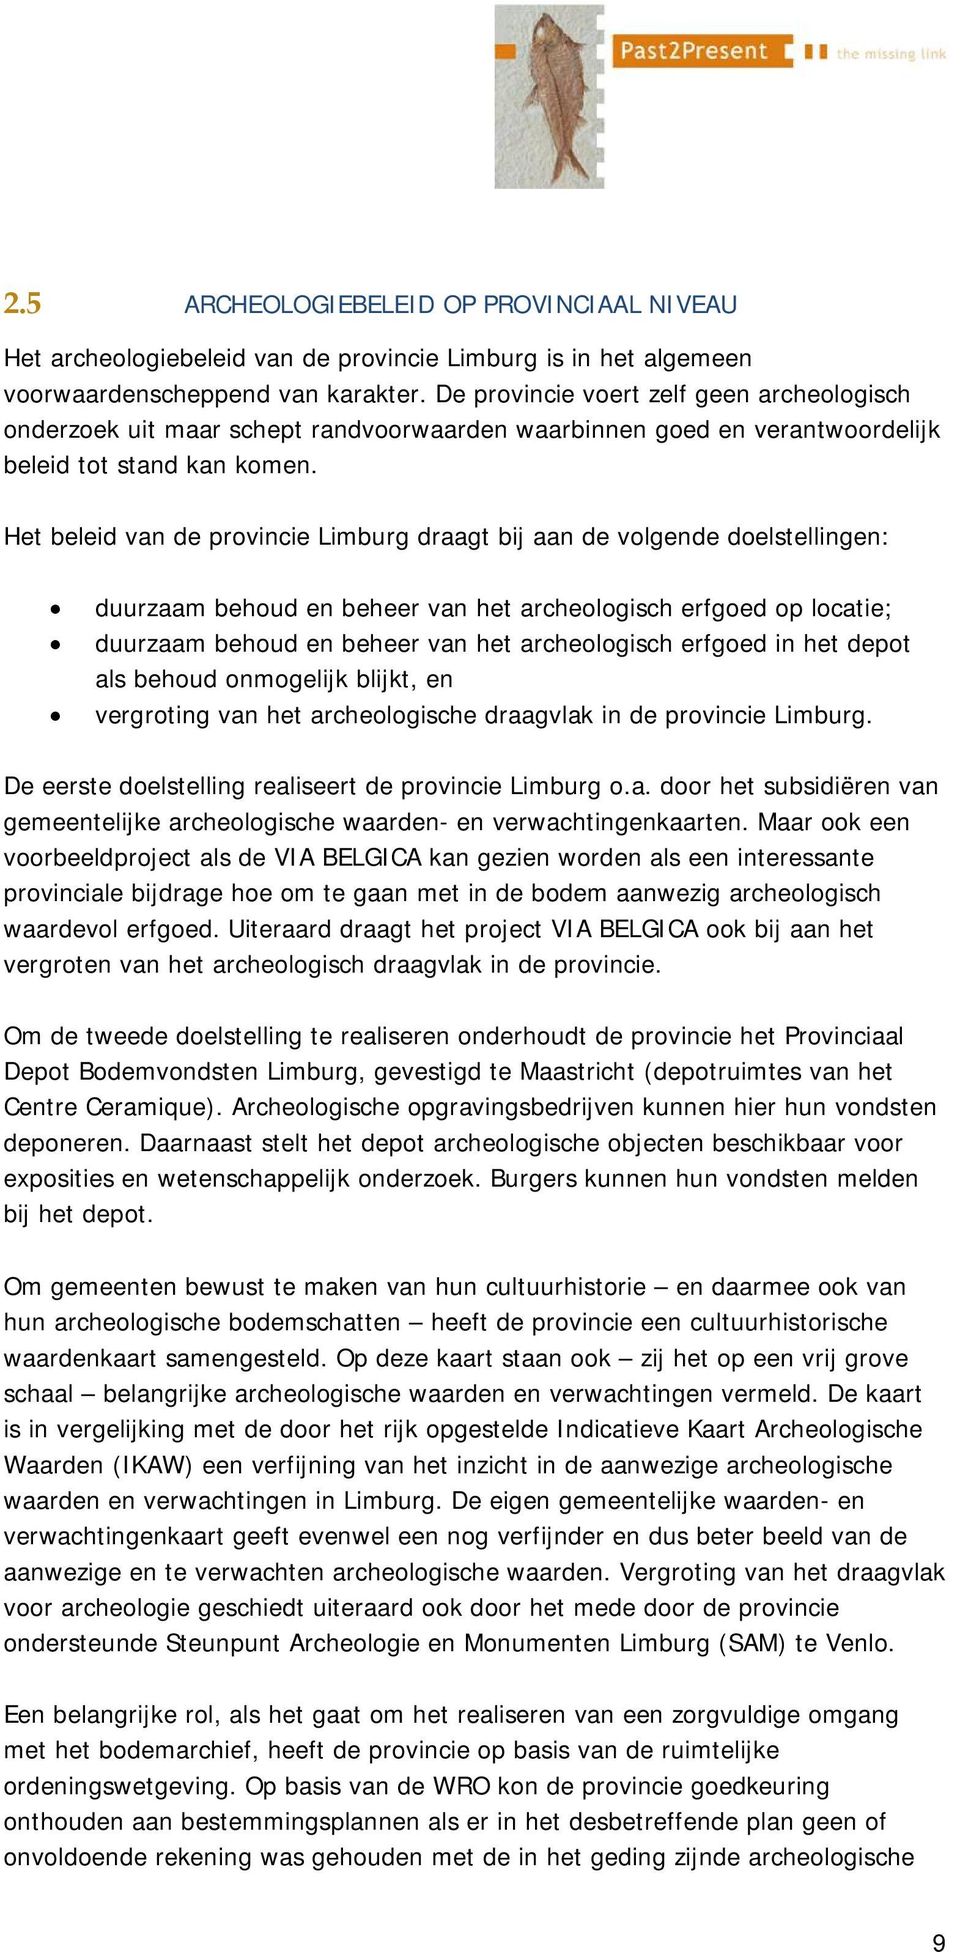 Het beleid van de provincie Limburg draagt bij aan de volgende doelstellingen: duurzaam behoud en beheer van het archeologisch erfgoed op locatie; duurzaam behoud en beheer van het archeologisch